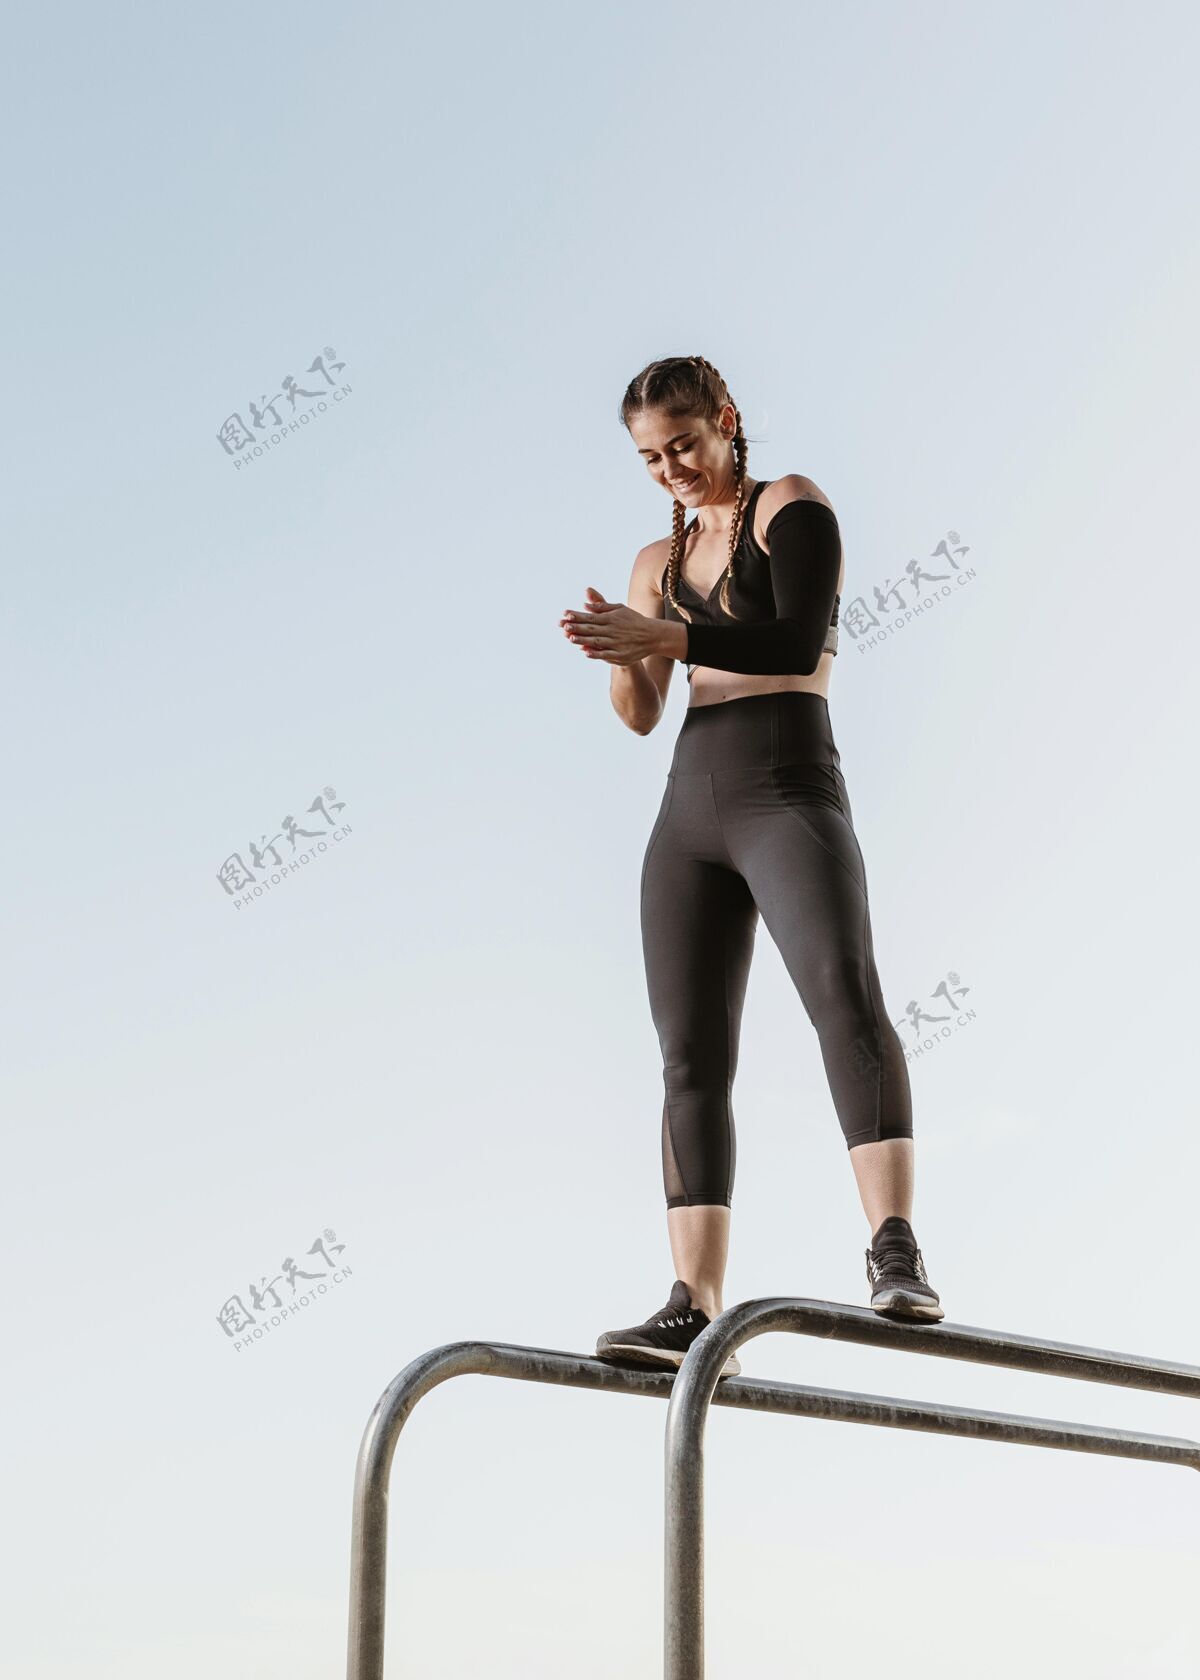 户外运动女子户外健身训练锻炼活动垂直